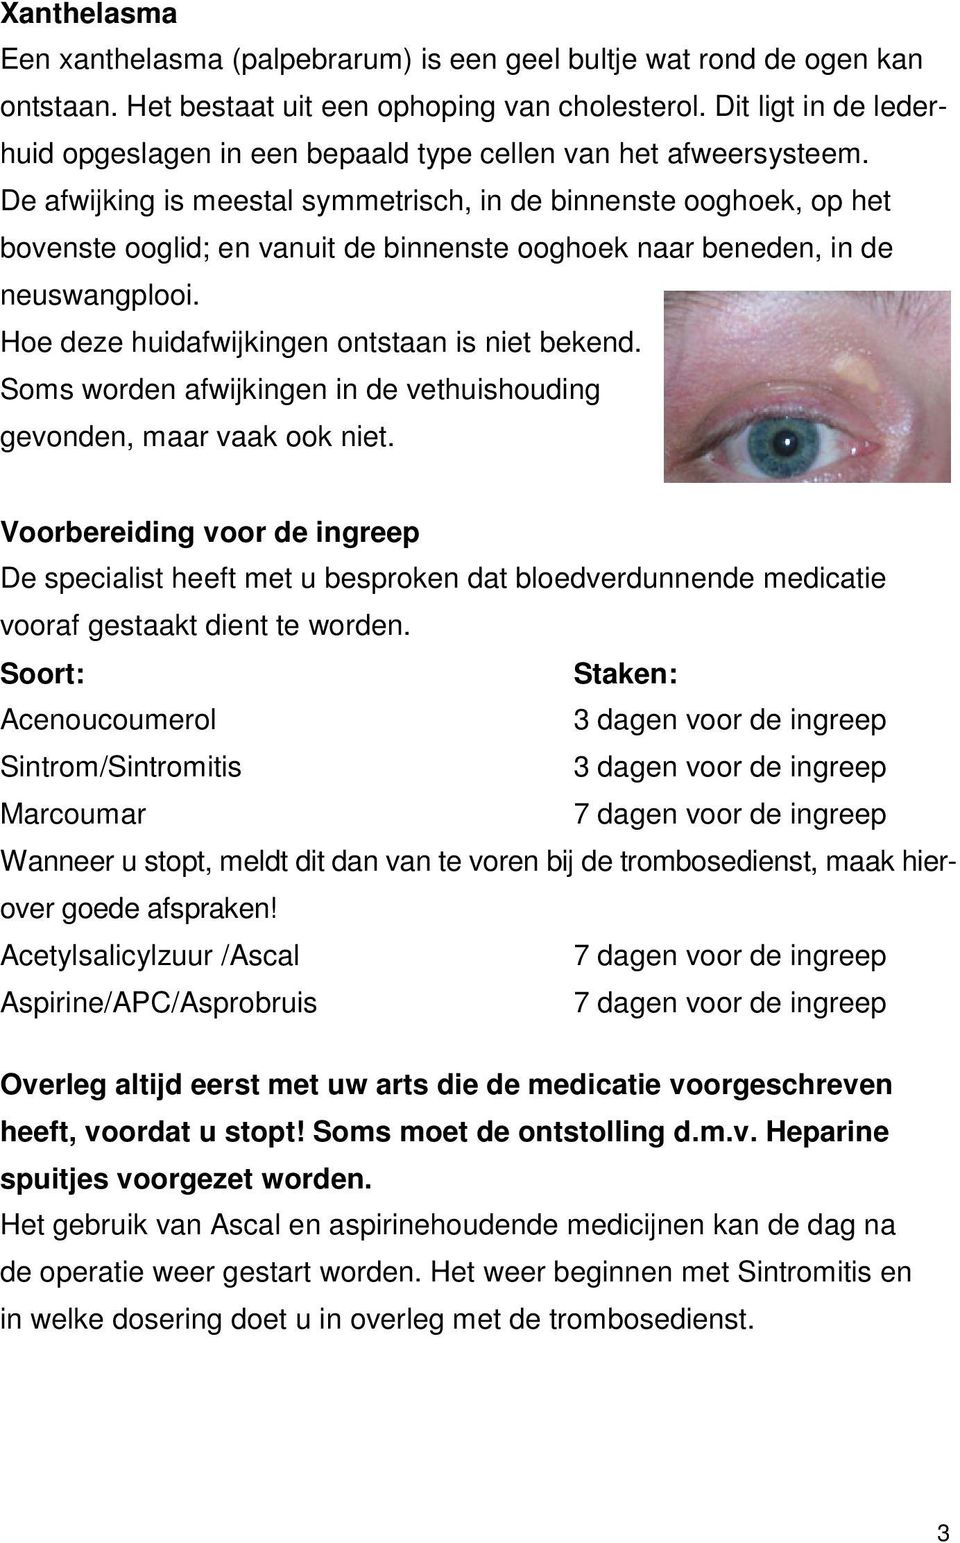 De afwijking is meestal symmetrisch, in de binnenste ooghoek, op het bovenste ooglid; en vanuit de binnenste ooghoek naar beneden, in de neuswangplooi.